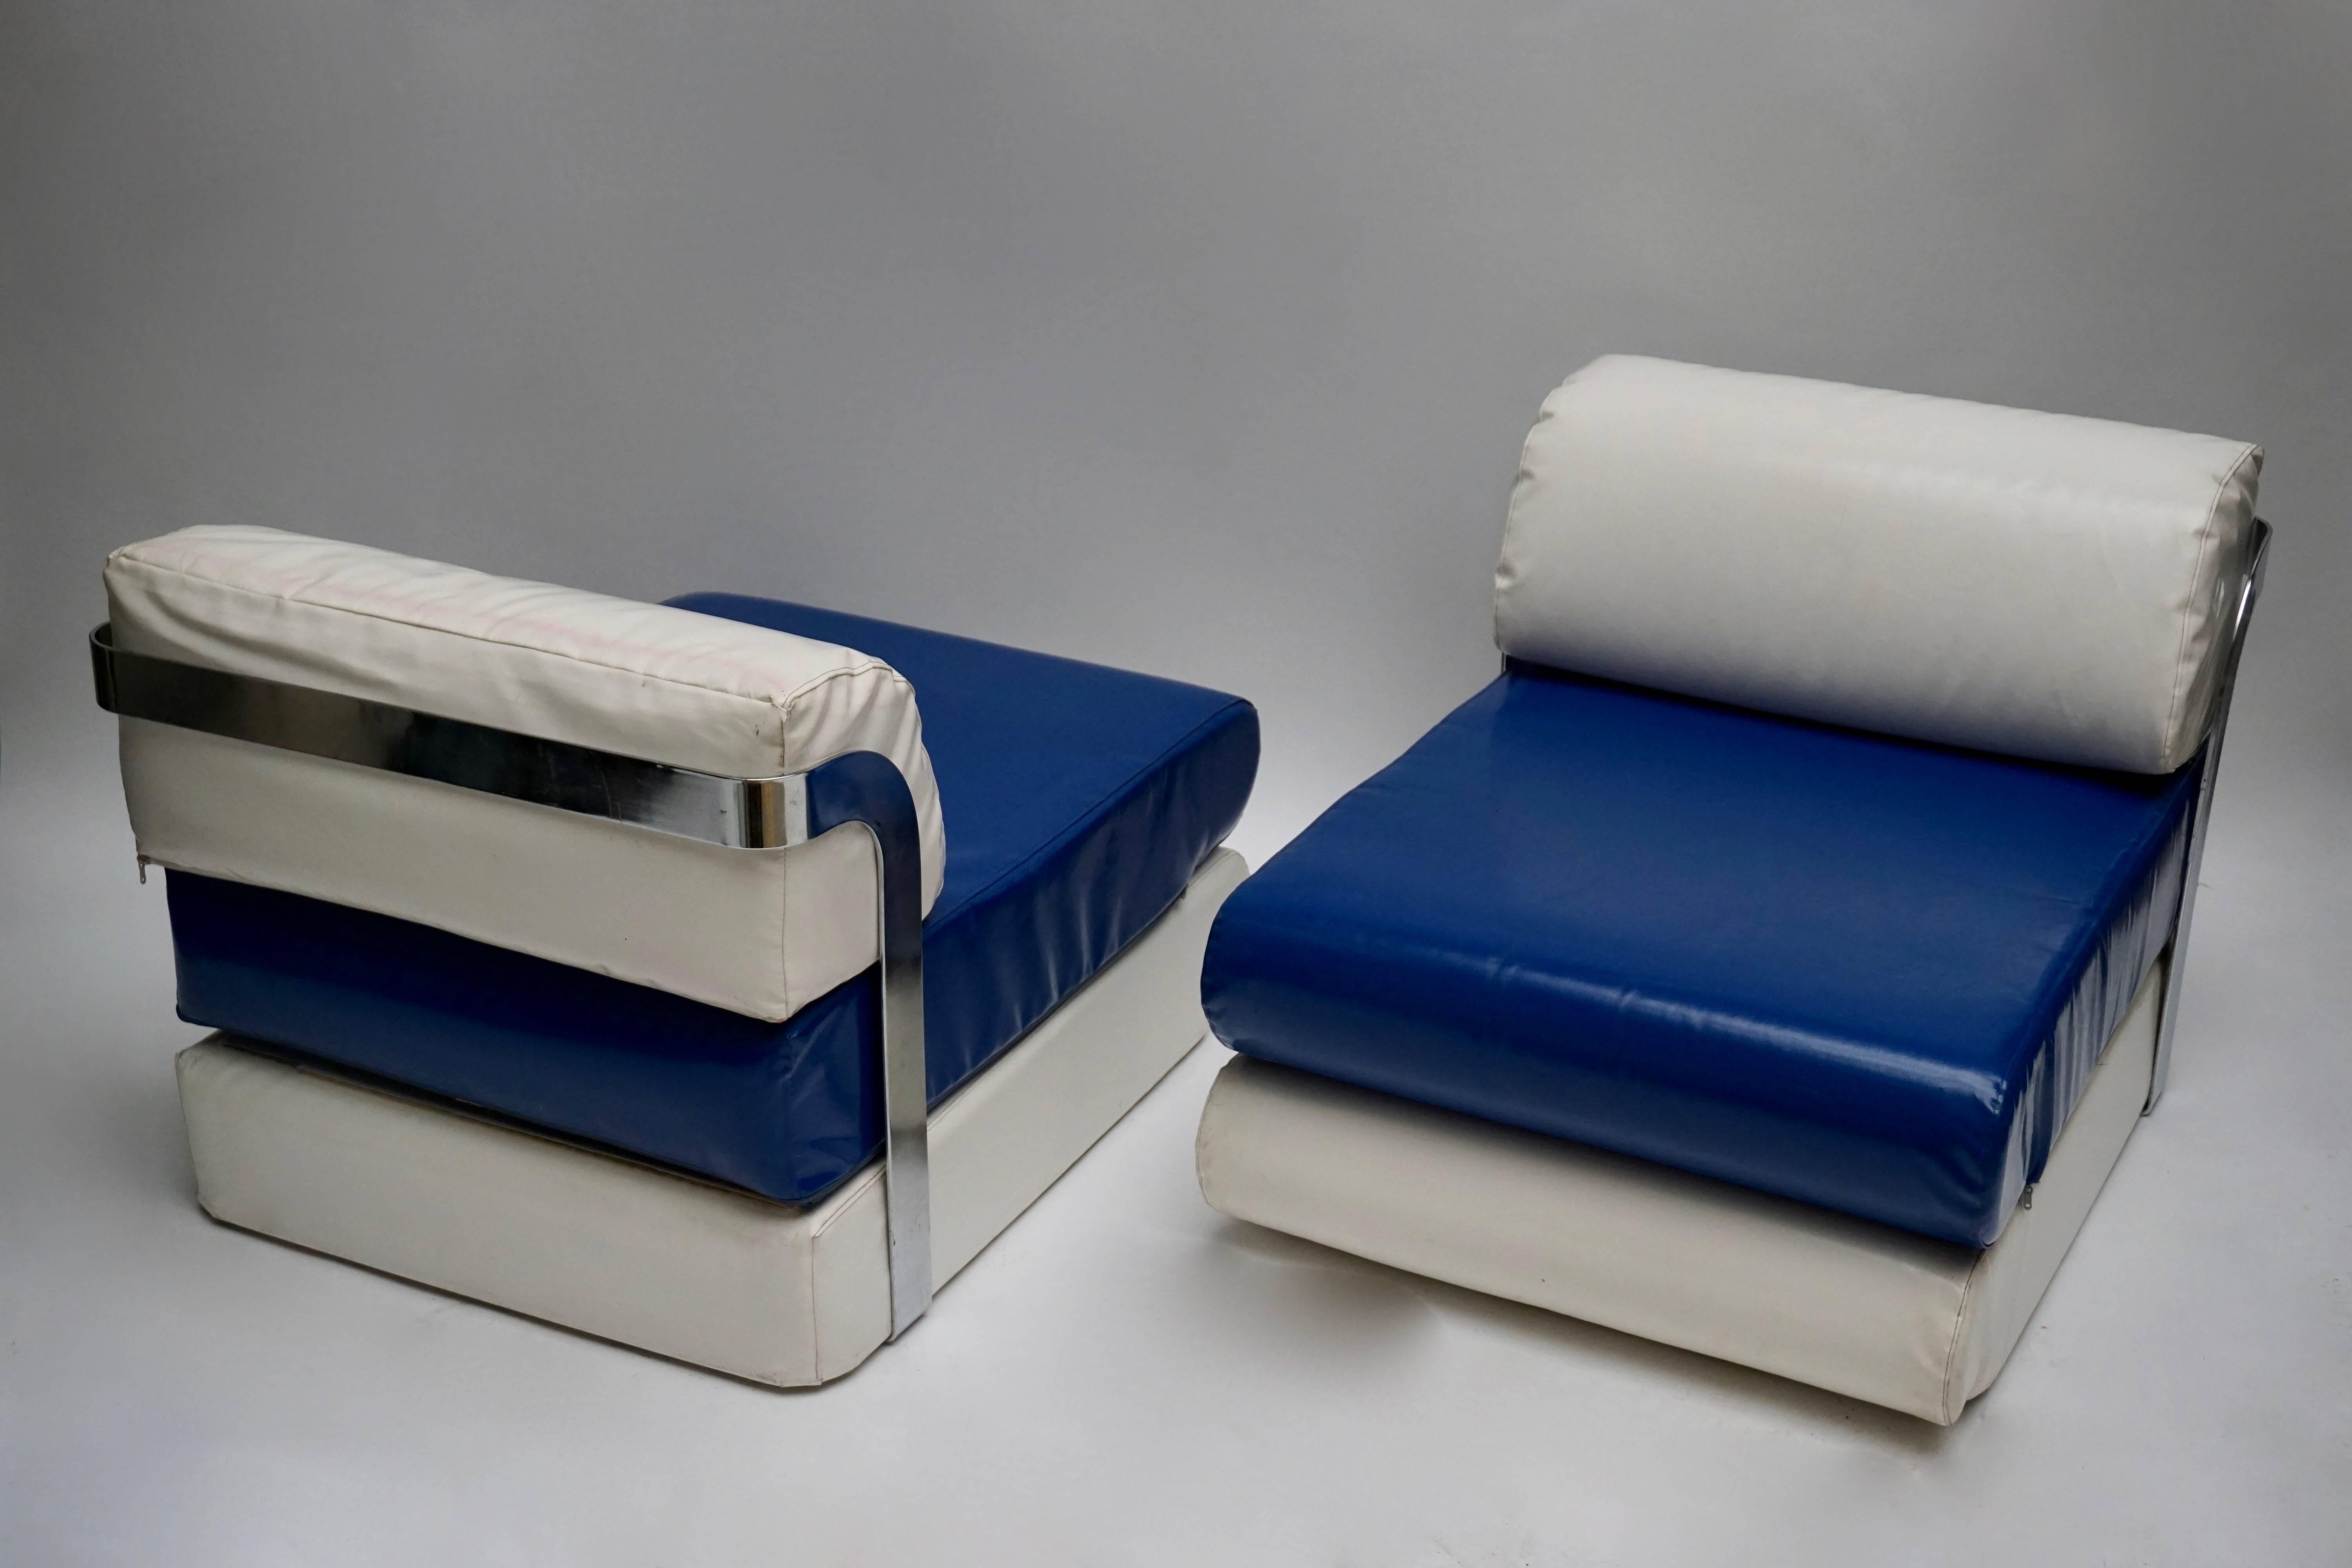 Deux chaises longues en bleu et blanc dans une structure en métal chromé.
Italie, années 1970.

Veuillez noter que le prix est par article et non pour l'ensemble.

